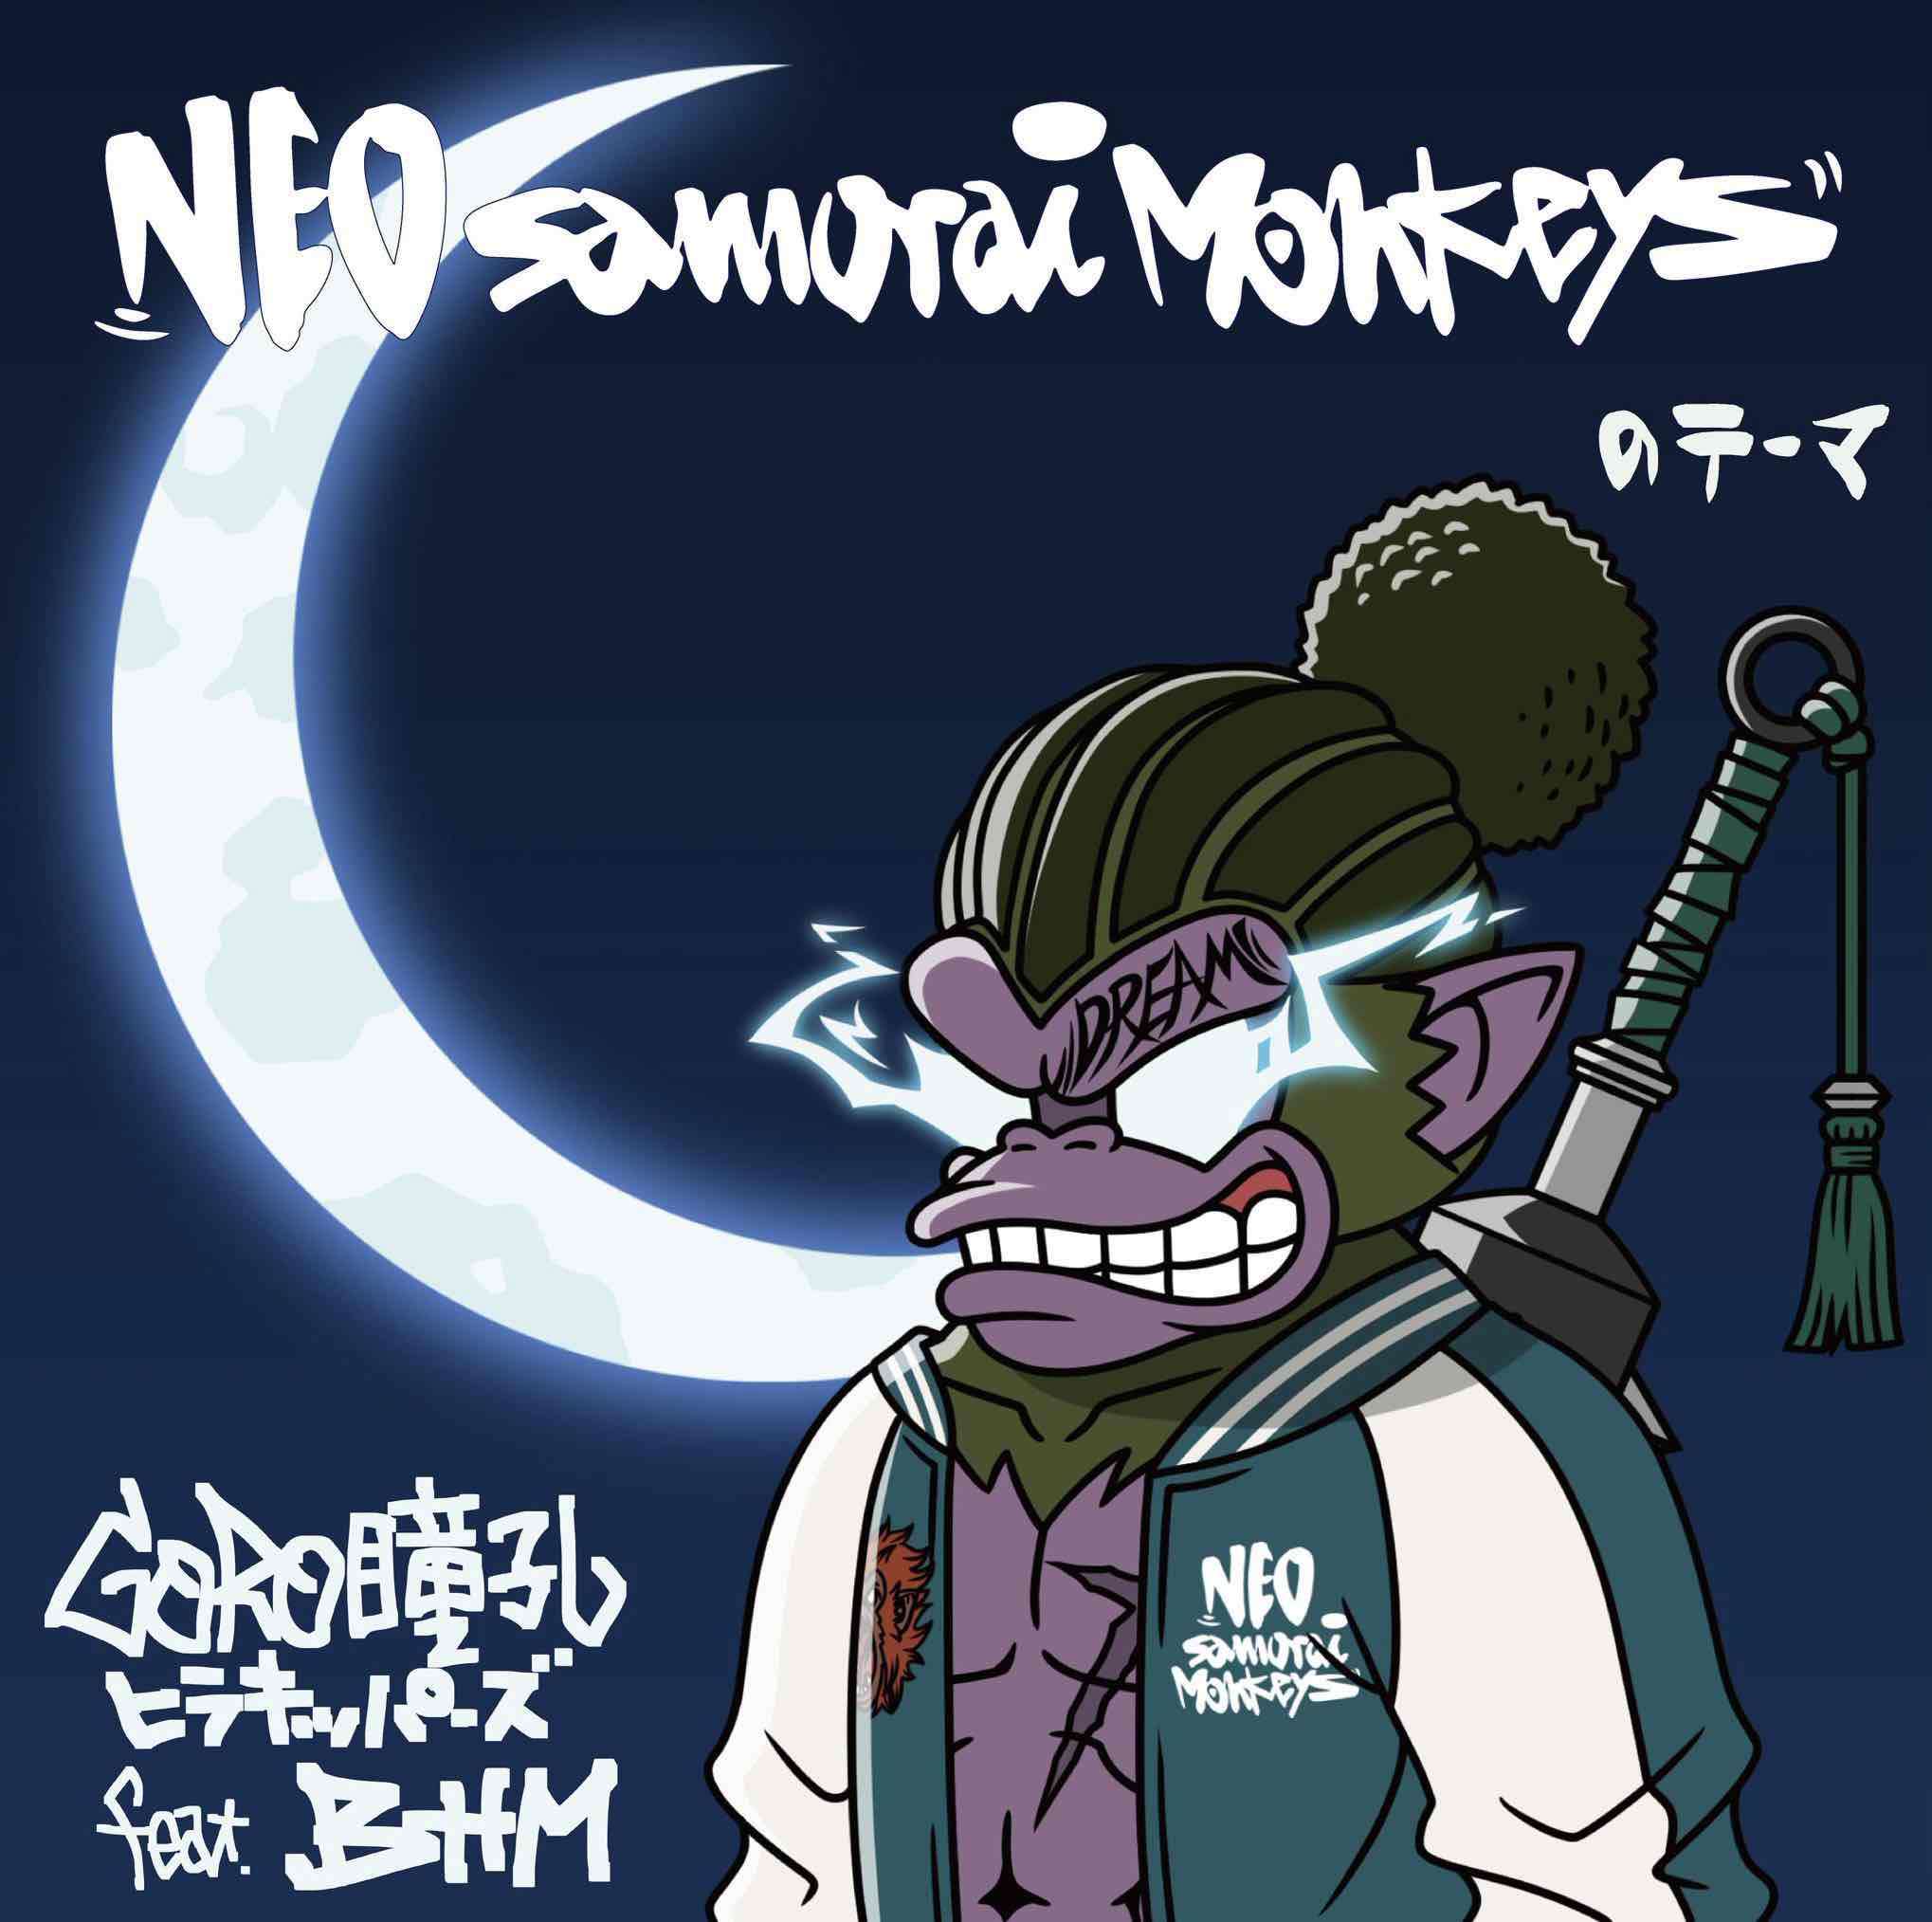 Neo Samurai Monkeys-GORO瞳孔ヒラキッパーズfeat.BHM